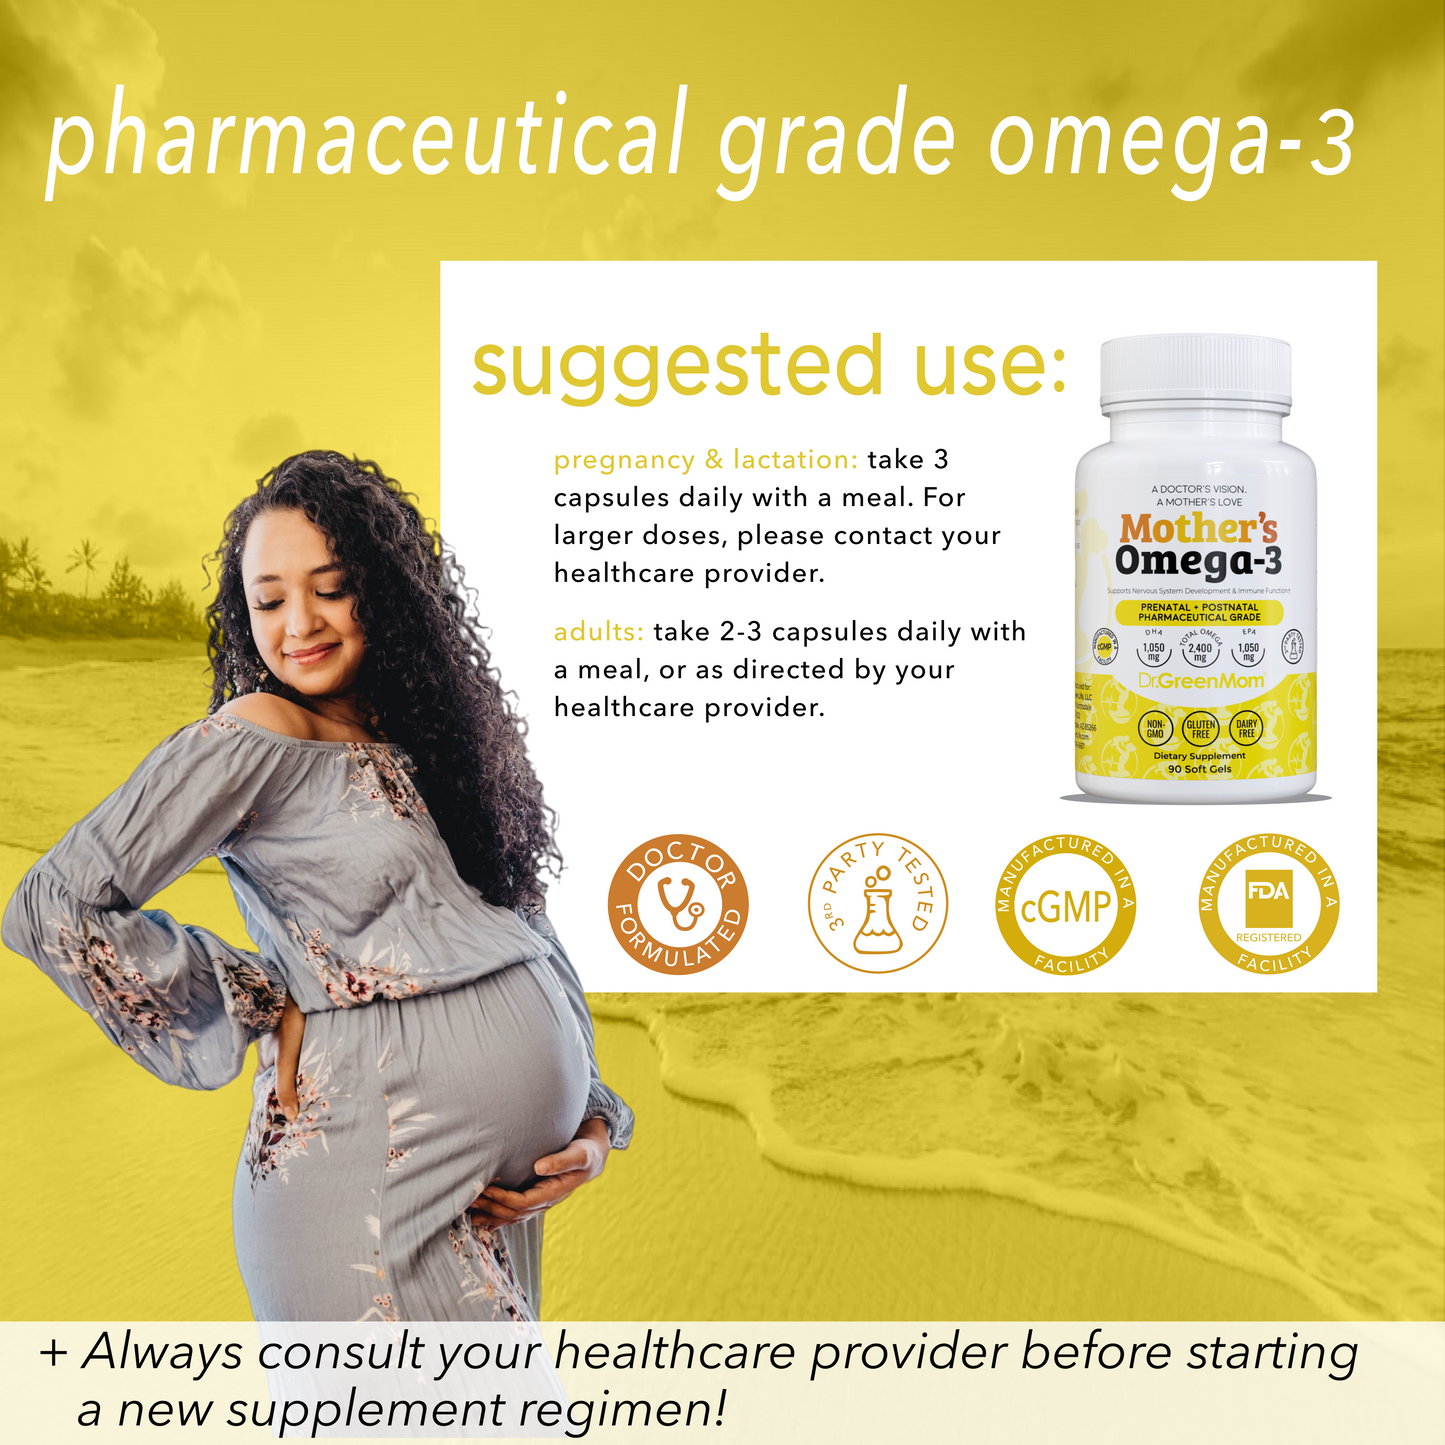 Mother's Omega-3 Pharmaceutical Grade